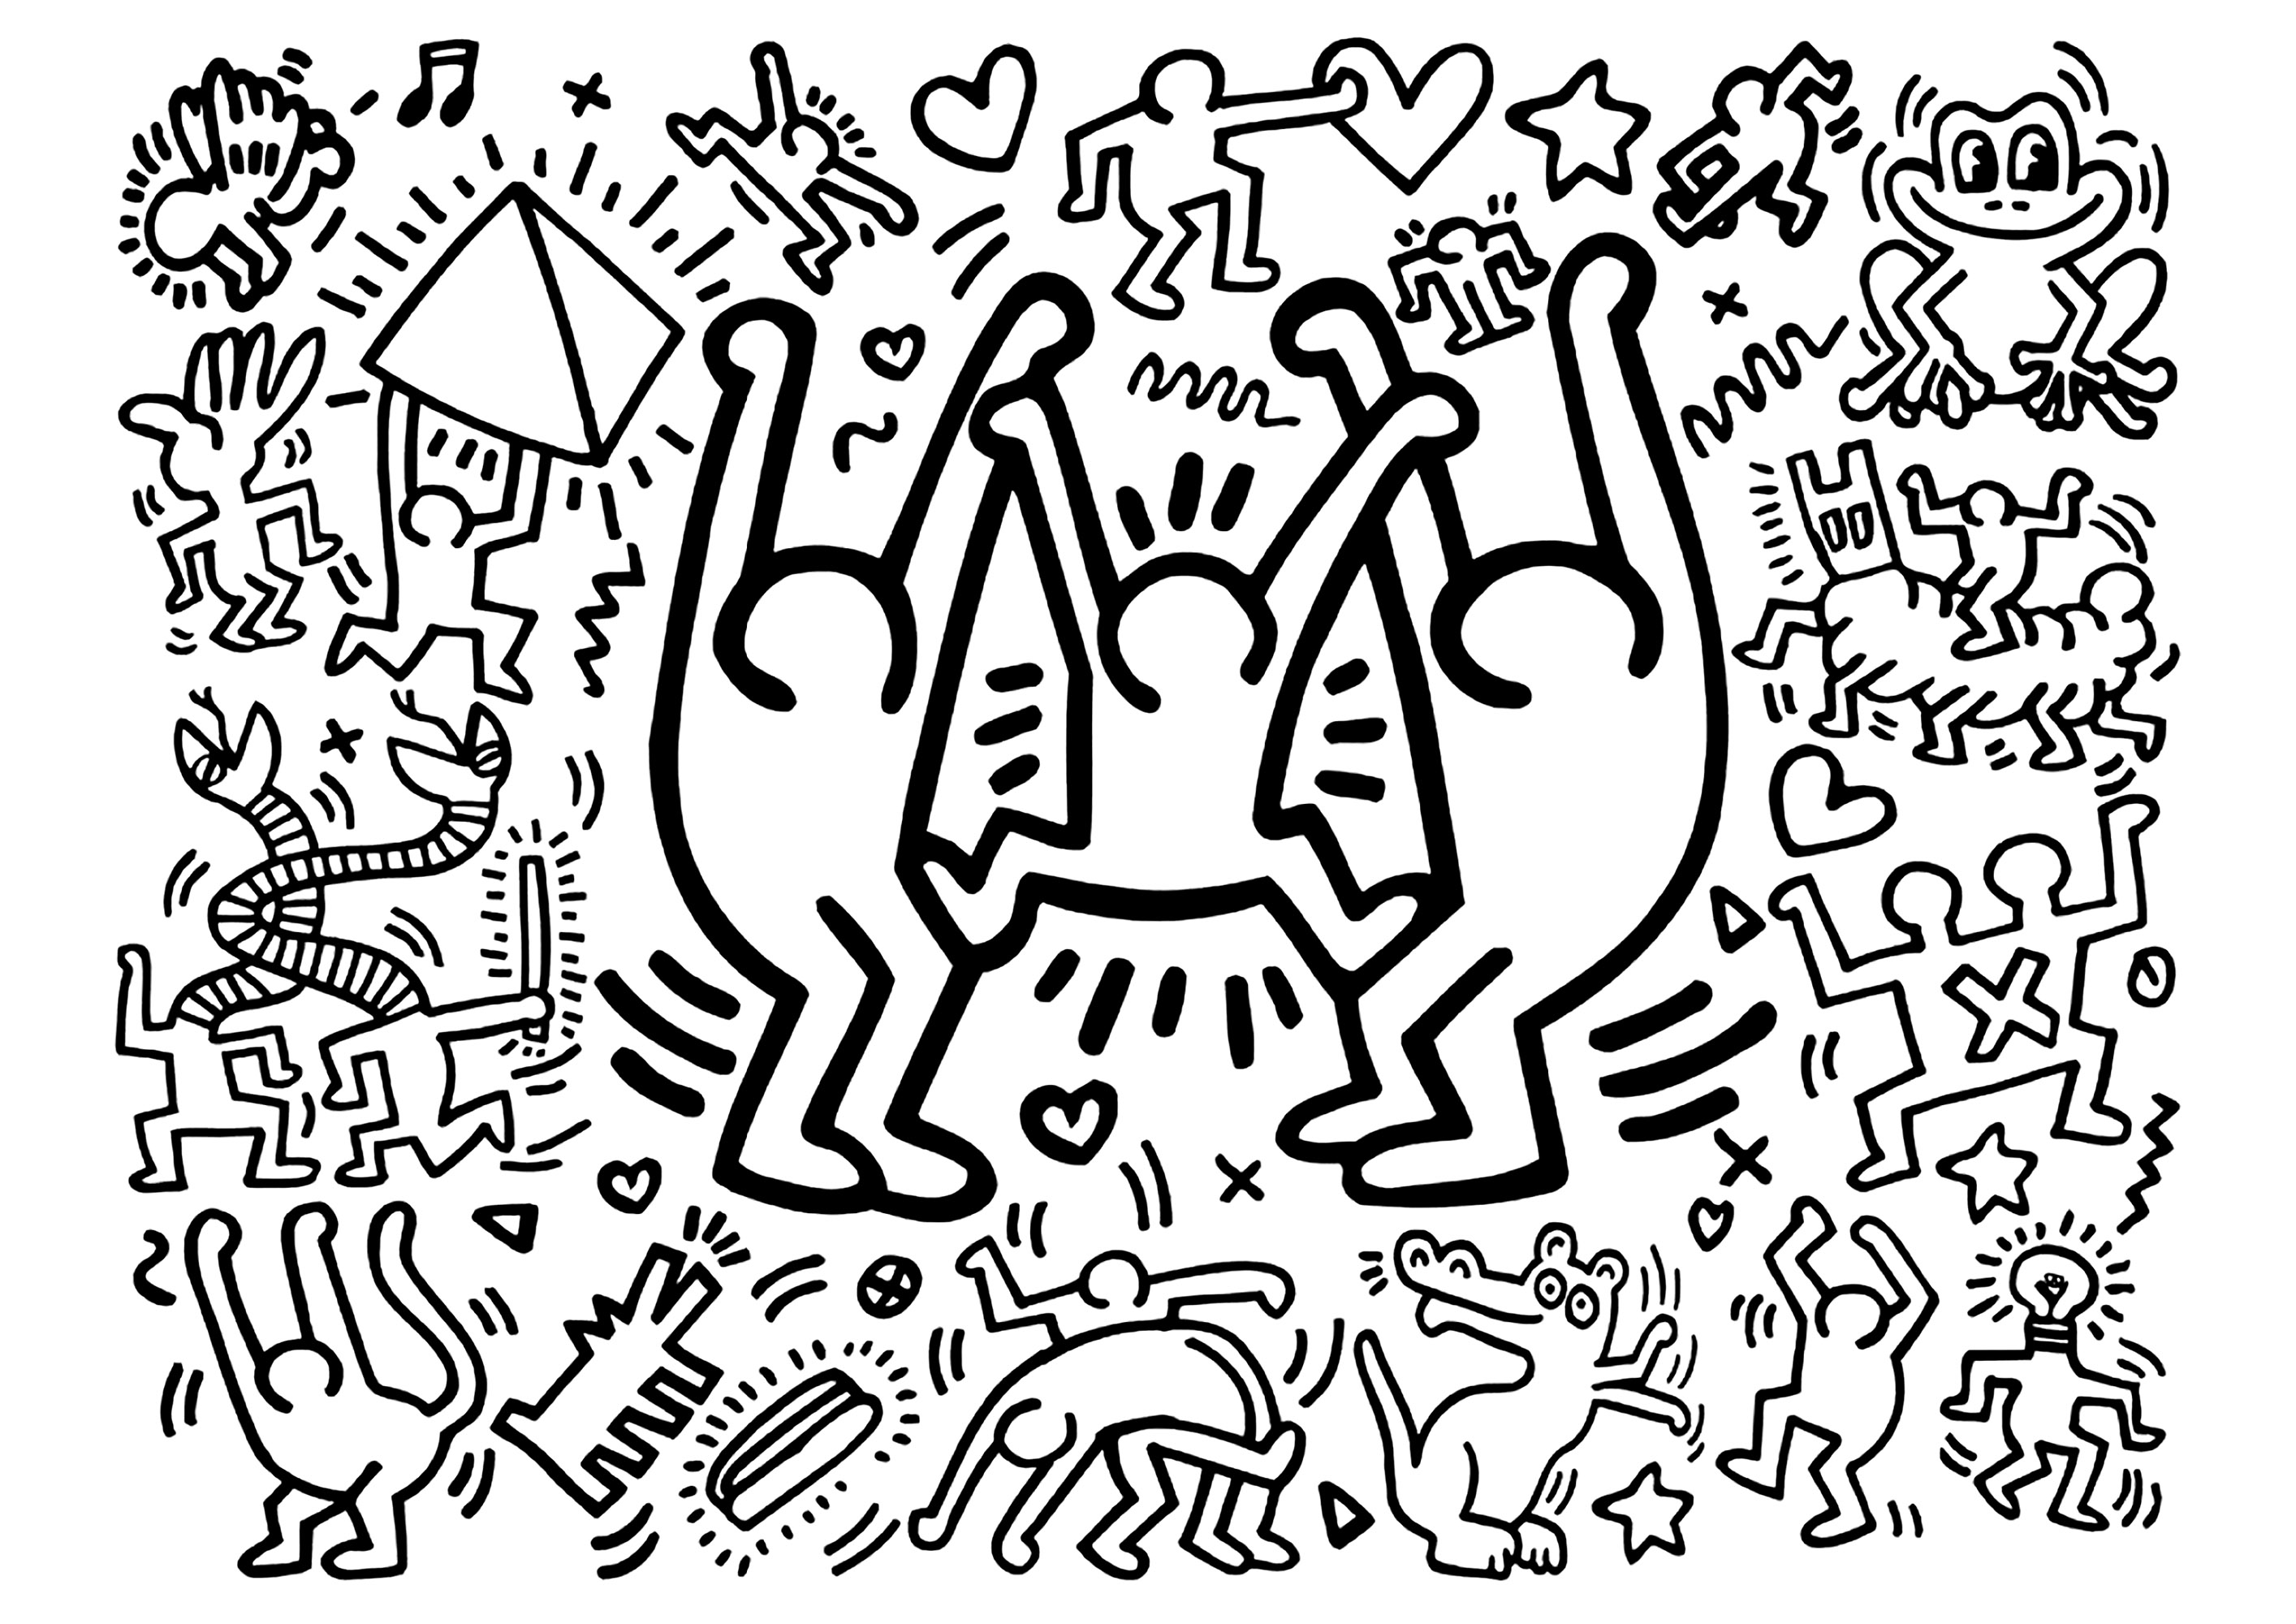 Keith Haring : Trois grands personnages joyeux et des plus petits. Un coloriage créé à partir d'une oeuvre de Keith Haring